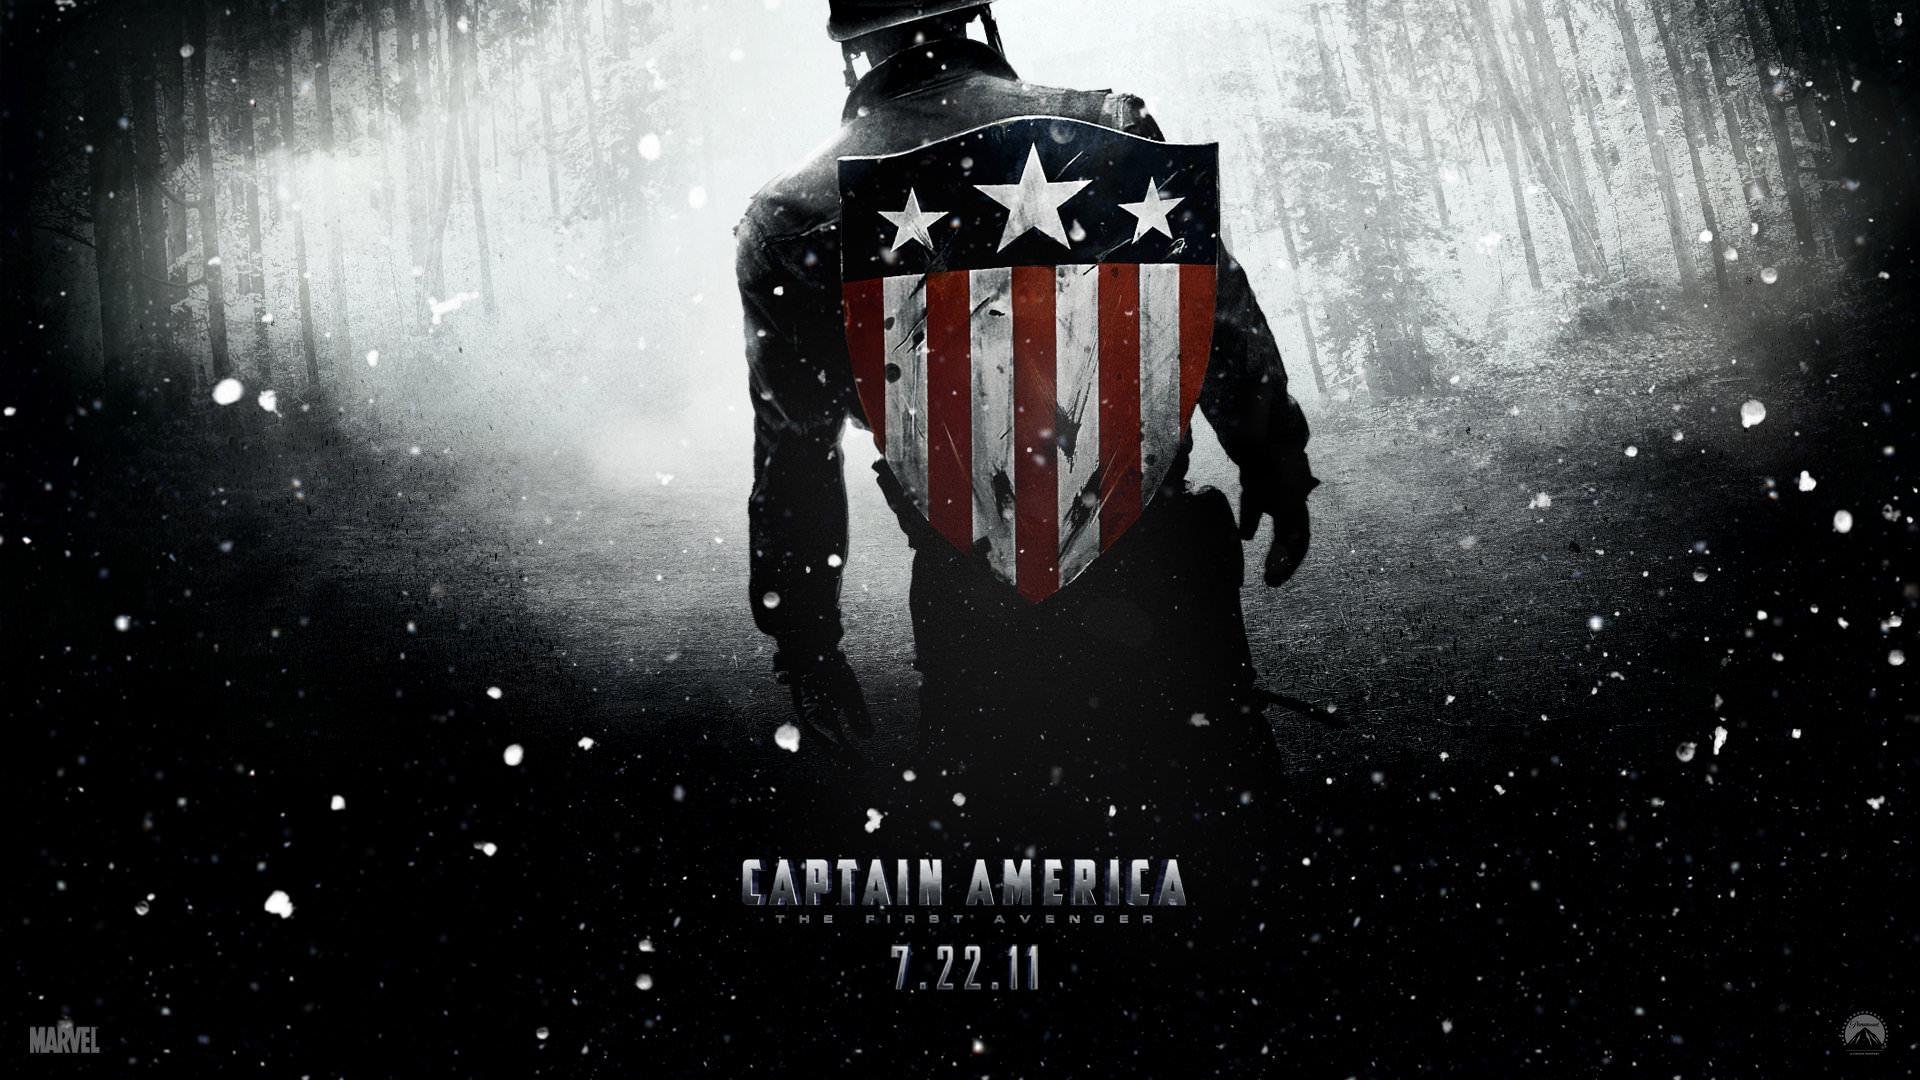 Captain America: The First Avenger wallpaper 1920x1080 Full HD